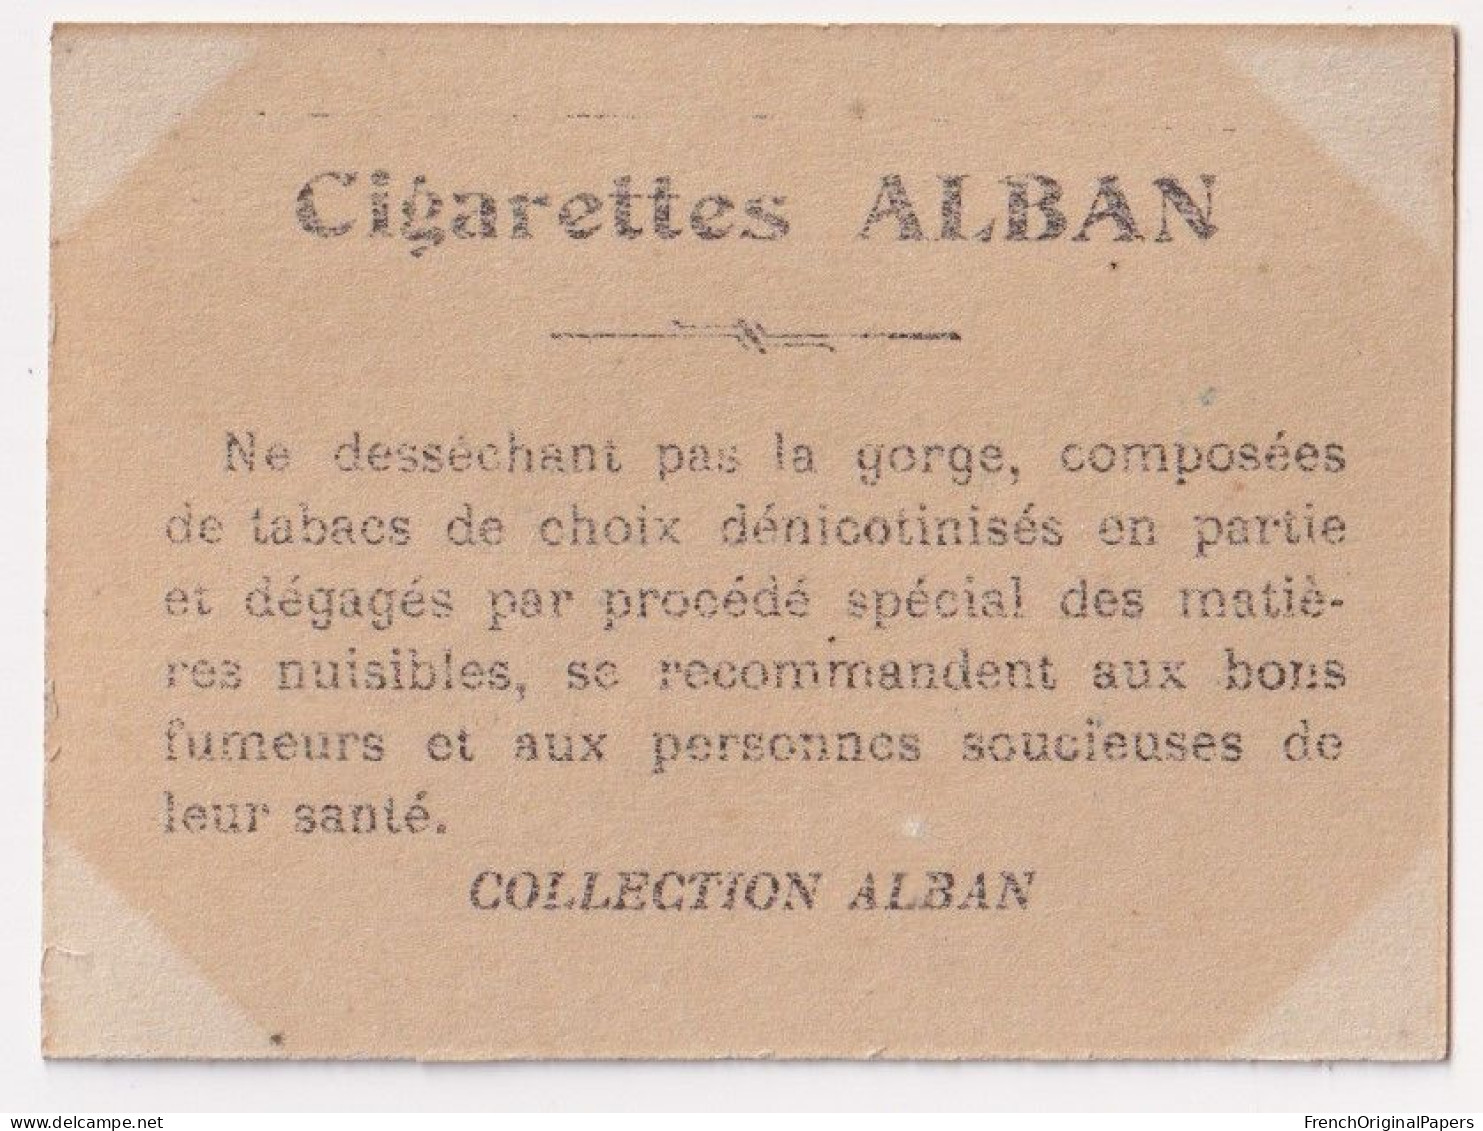 Tolédo - Cigarettes L. Alban 1910 Photo Femme Sexy Pin-up Vintage Artiste Cabaret Paris Bône Danse Danseuse A62-18 - Zigarettenmarken